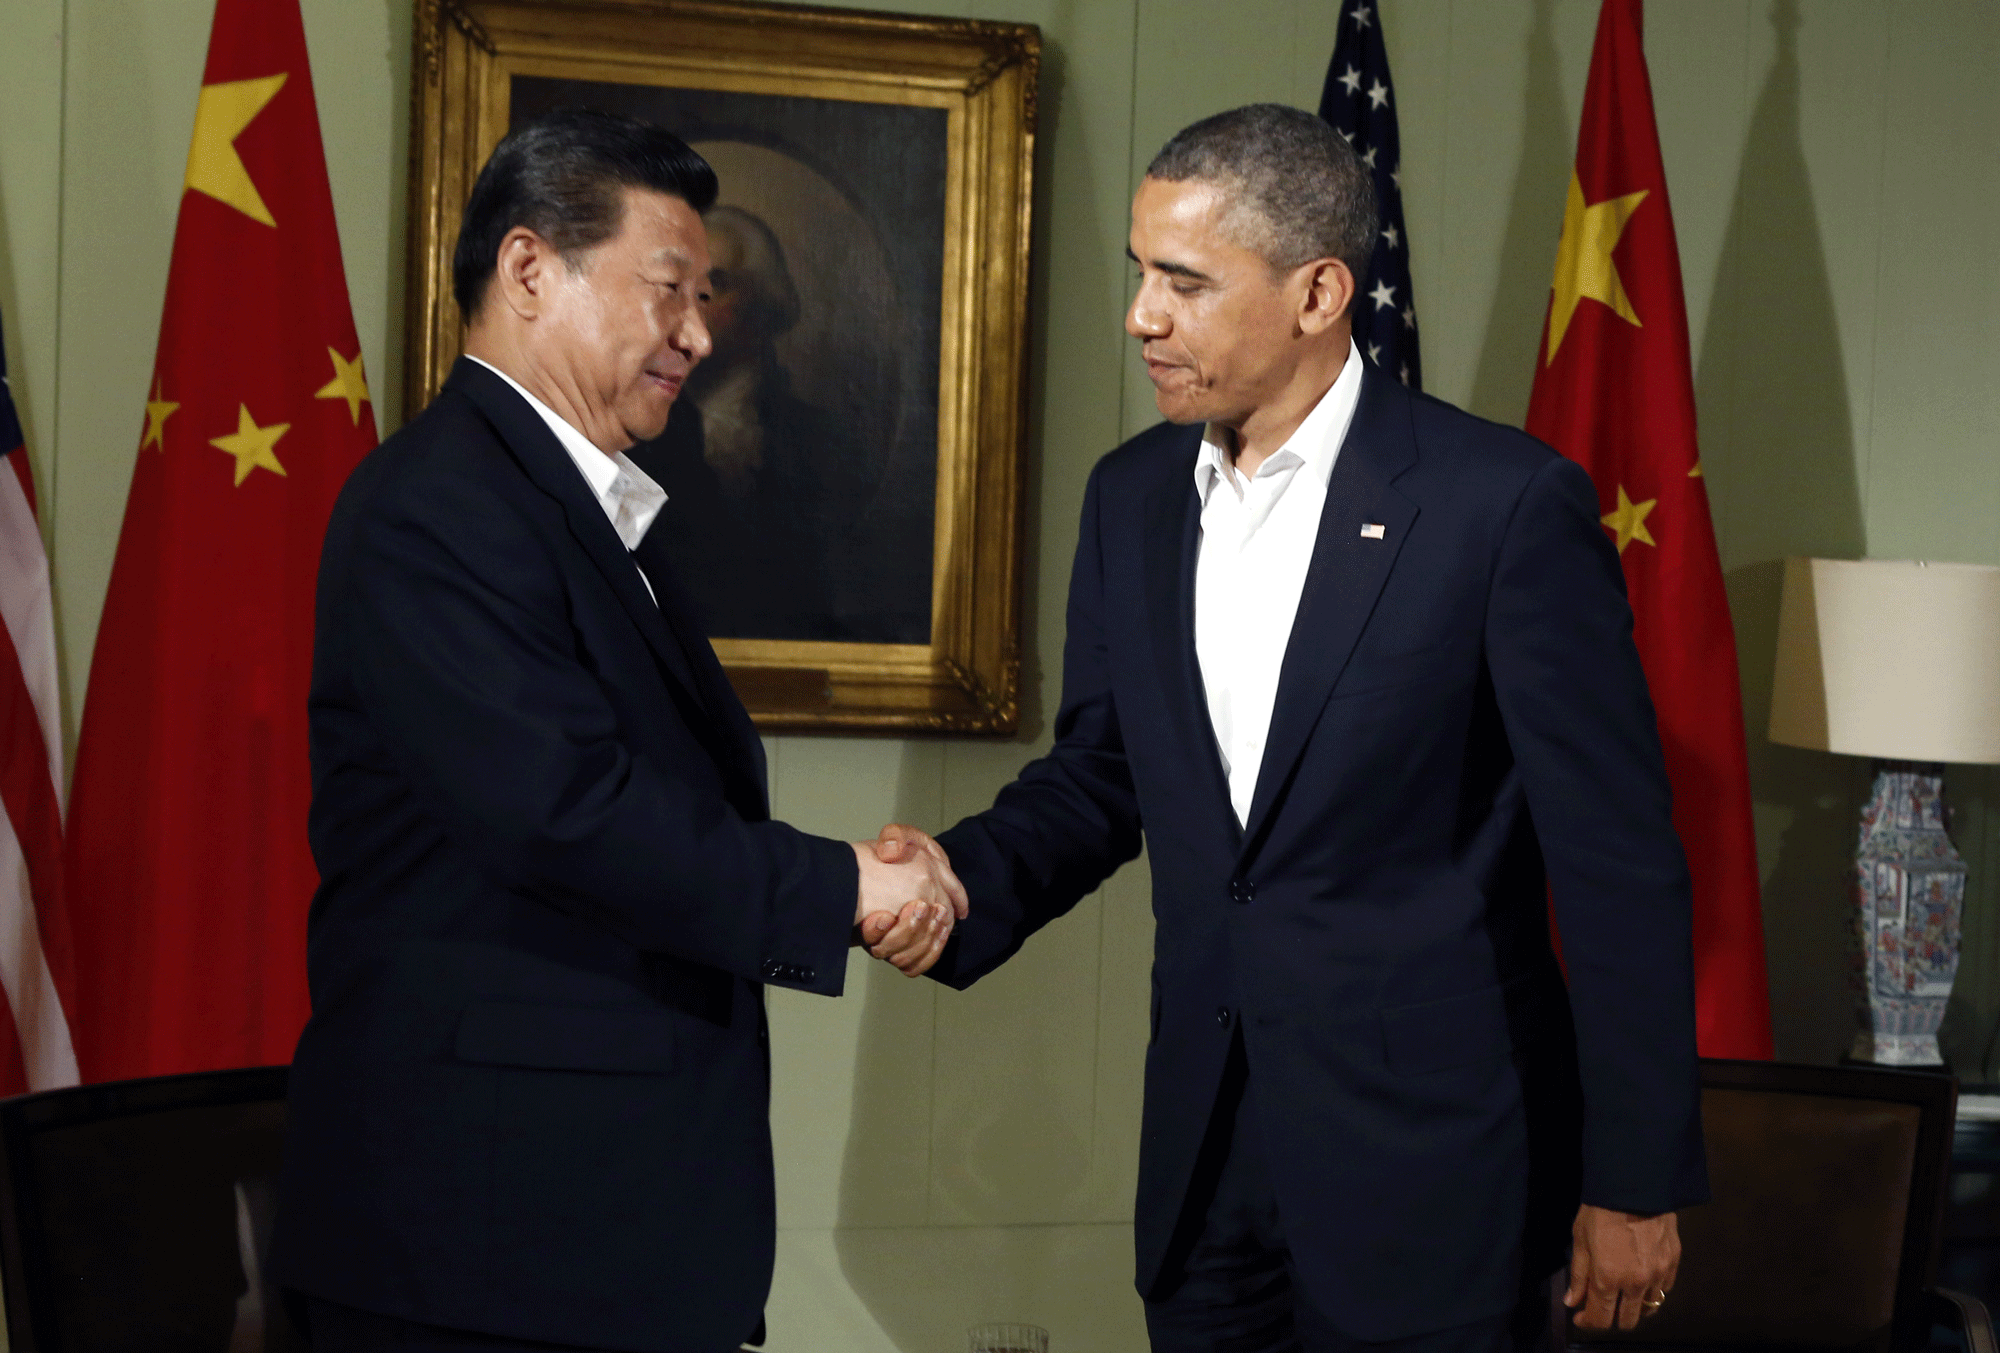 Le président américain Barack Obama rencontre son homologue chinois Xi Jinping. [Kevin Lamarque]